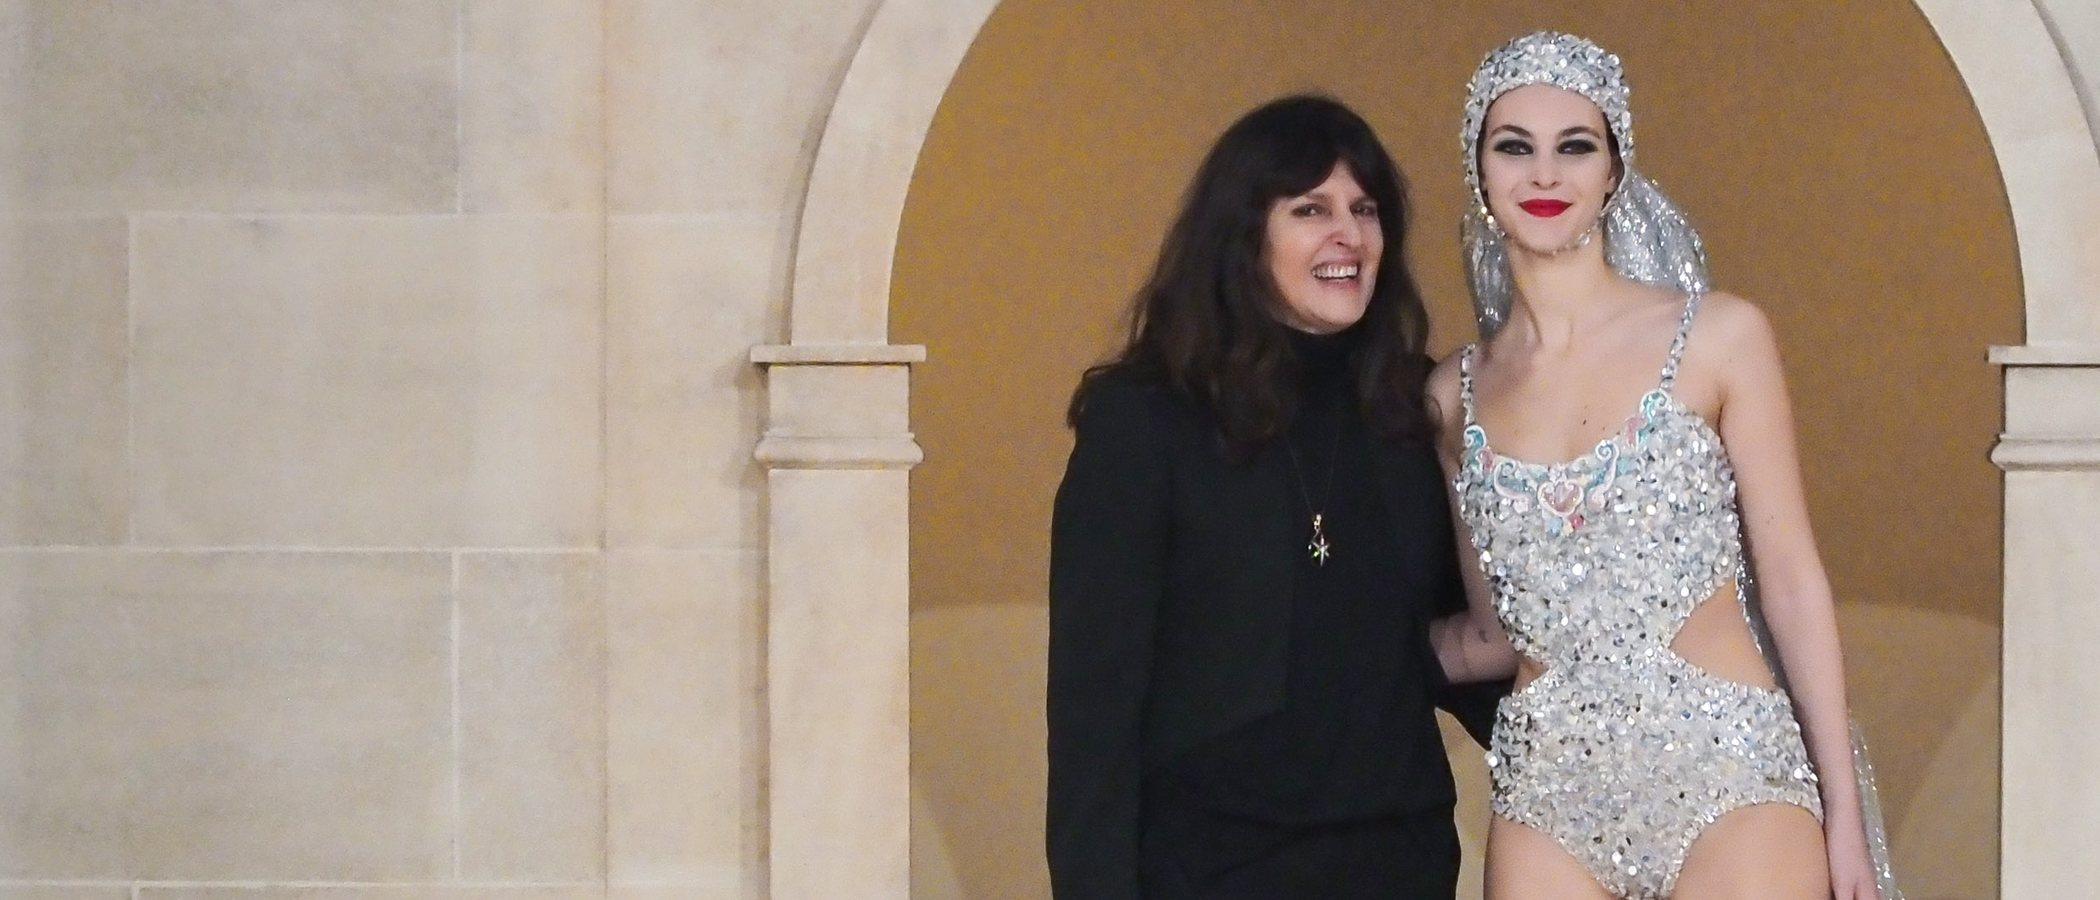 Quién es Virginie Viard, la mujer que ya ocupa el lugar de Karl Lagerfeld al mando de Chanel